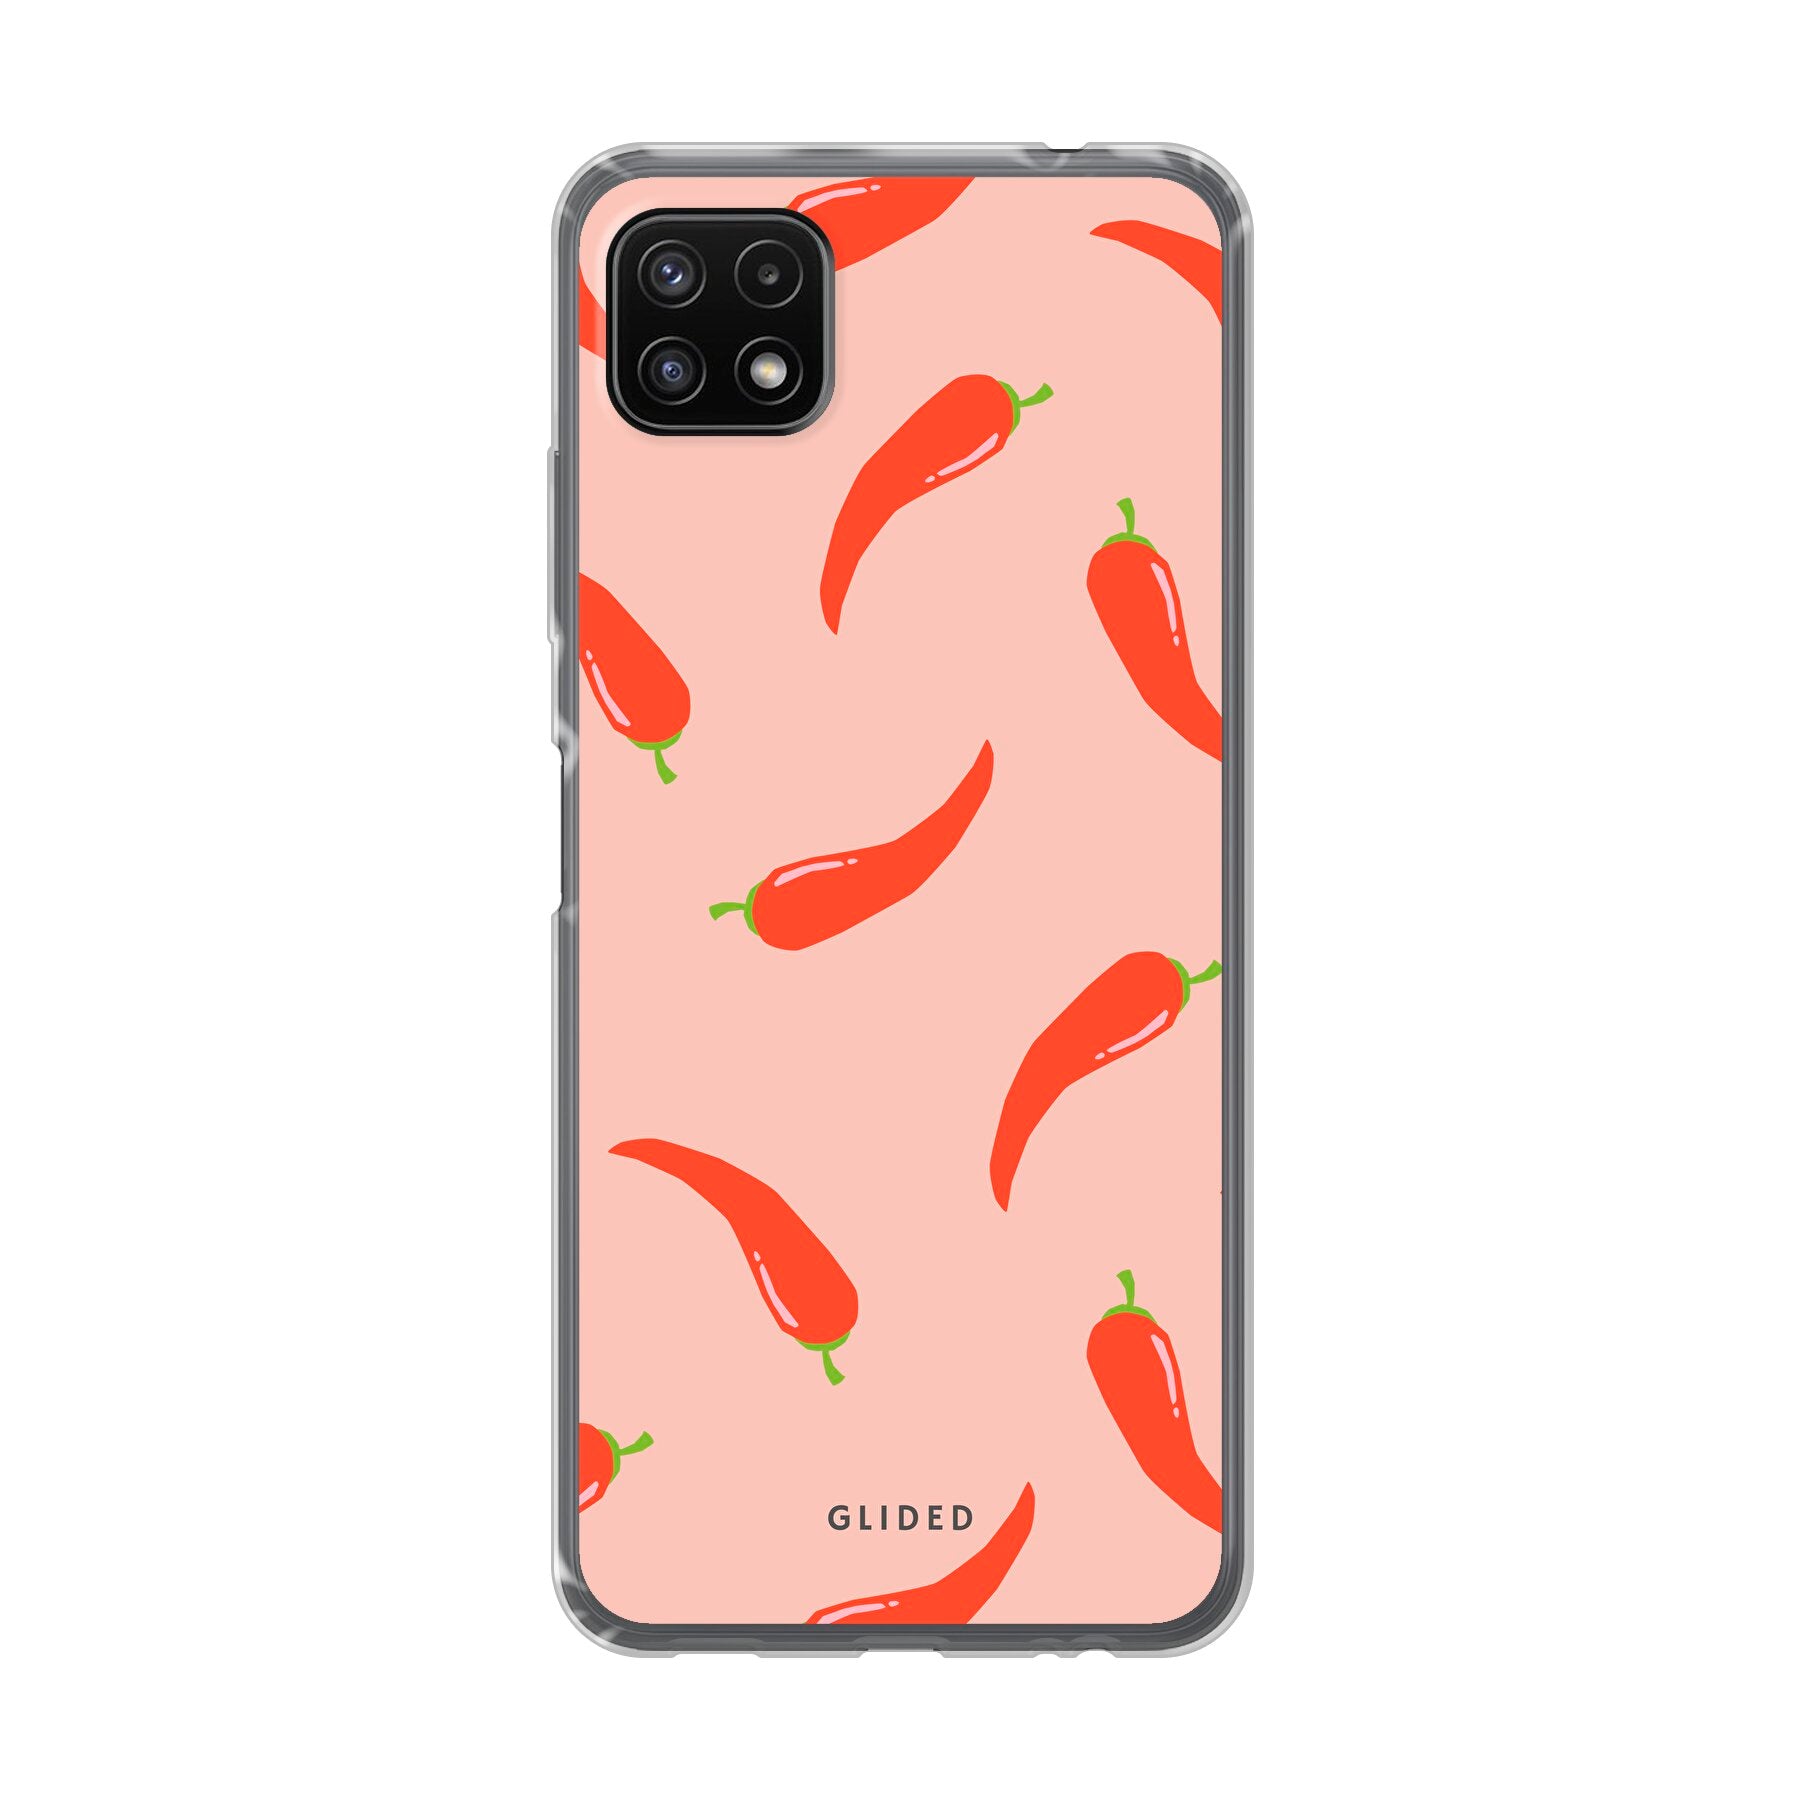 Spicy Chili - Samsung Galaxy A22 5G - Soft case